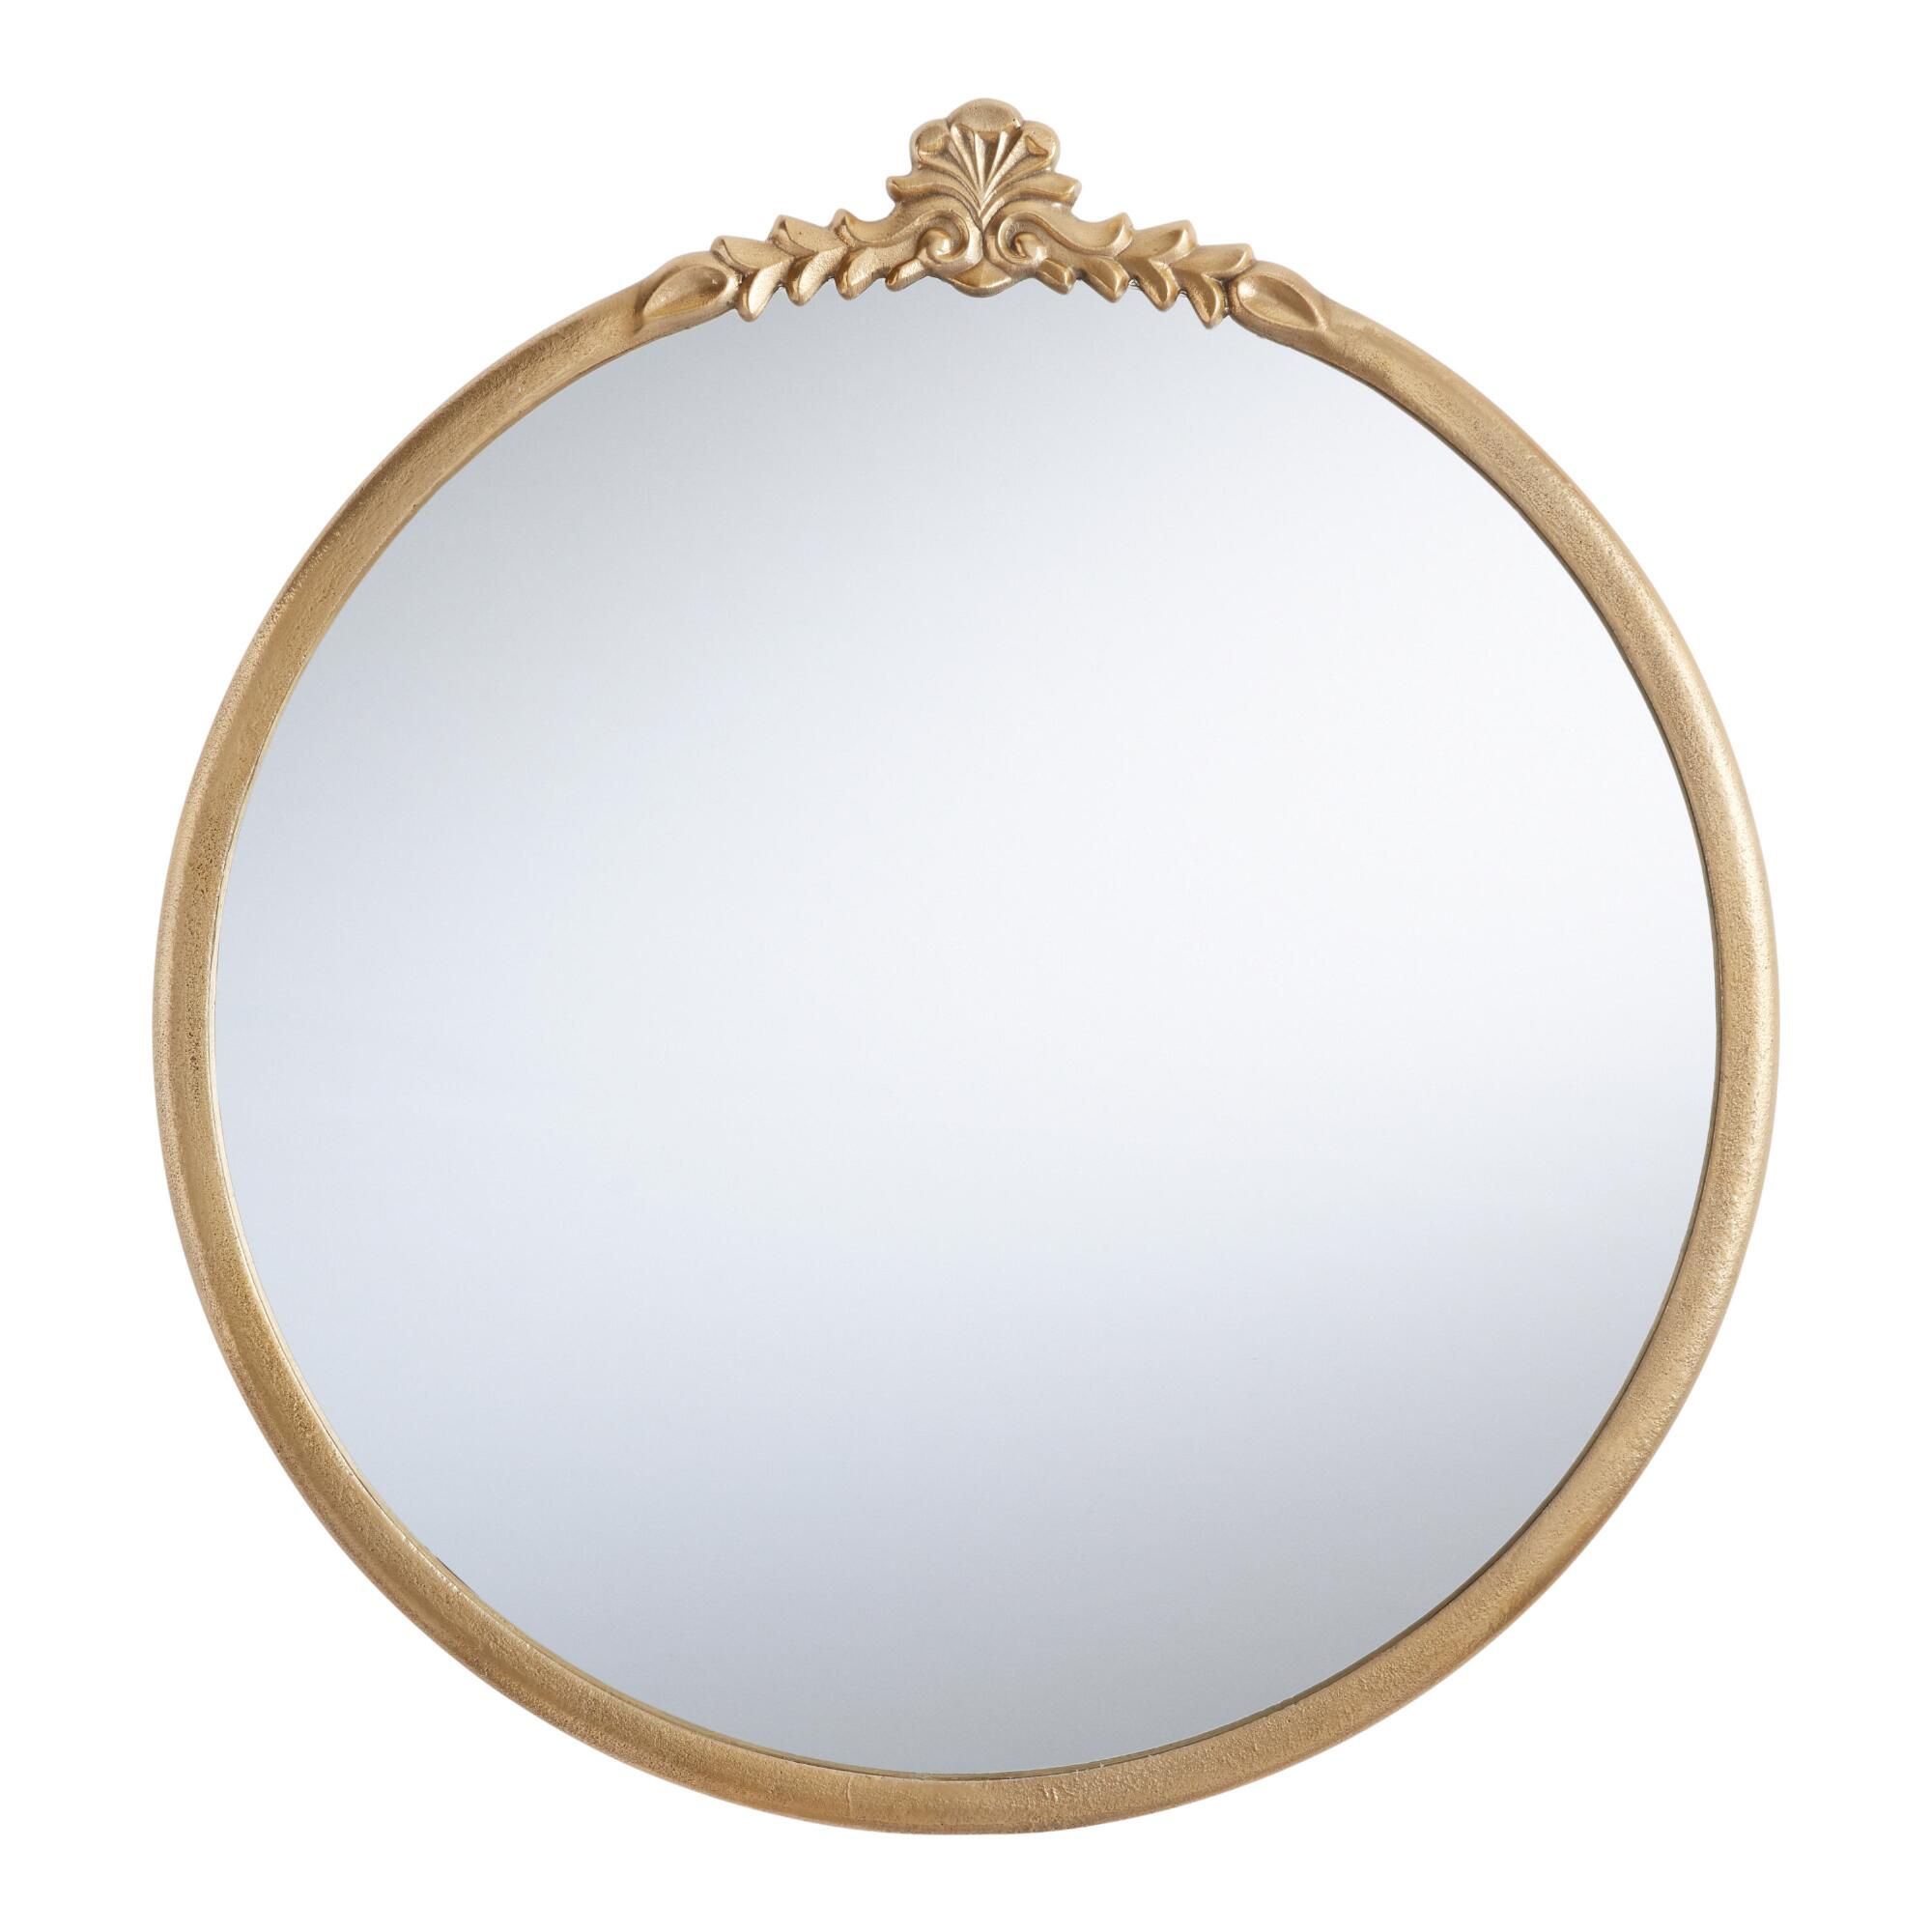 Round Metal Vintage Style Mirror: Metallic - Medium (36" & under) by World Market